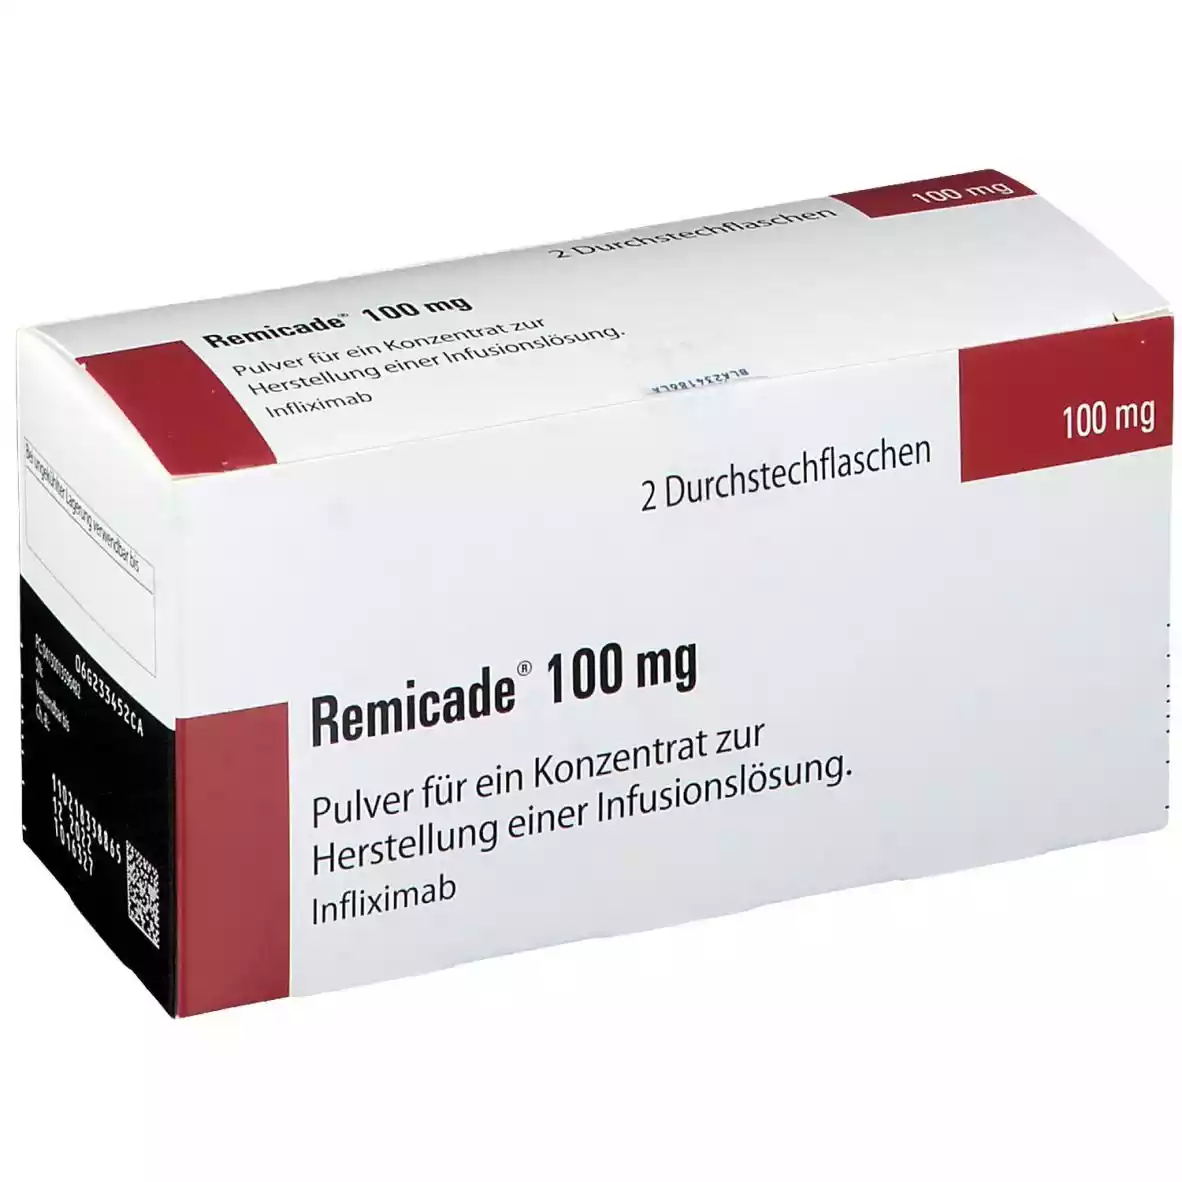 Ινφλιξιμάμπη (φάρμακο Remicade): Ενδείξεις, παρενέργειες, χρήση